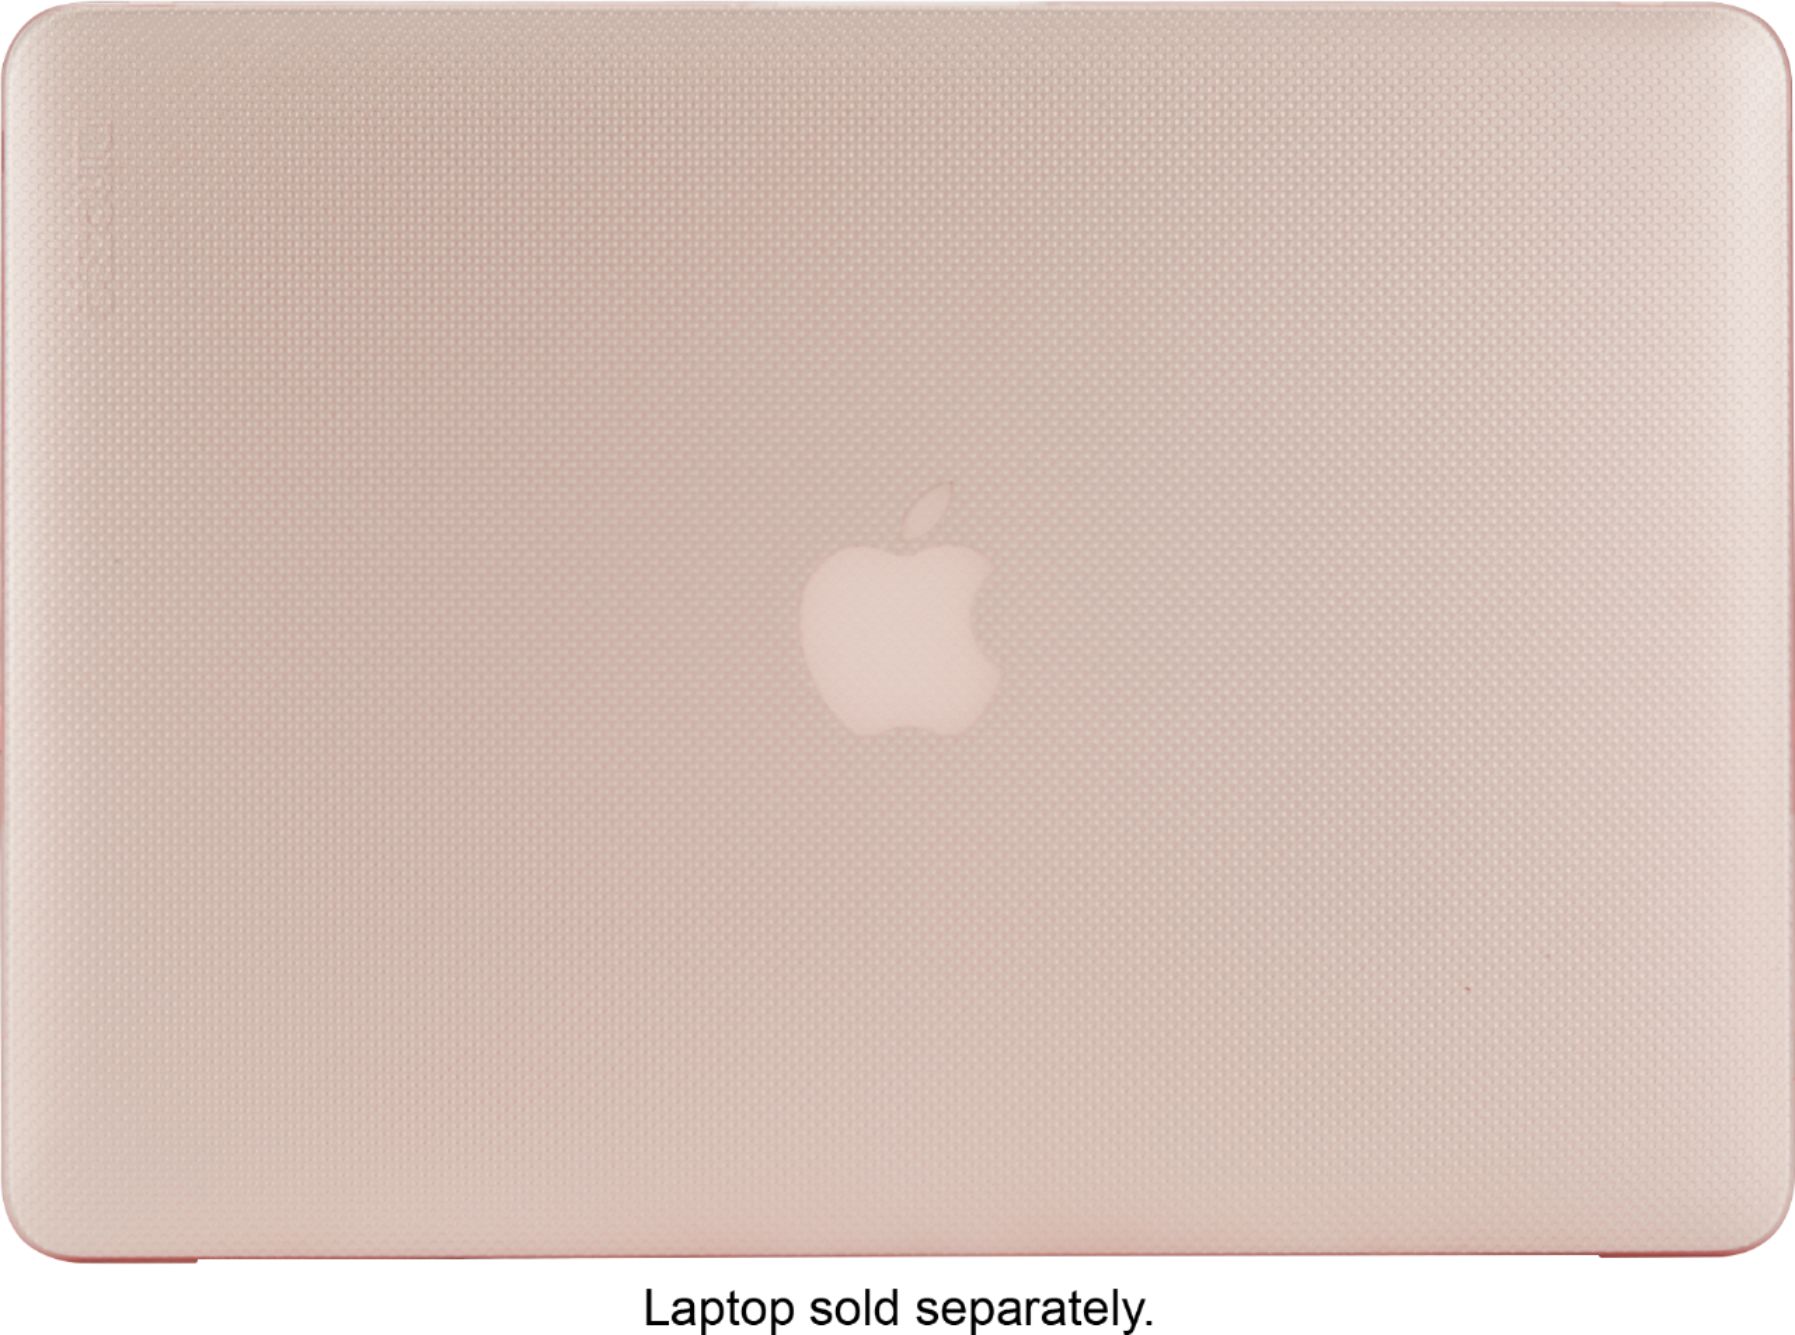 macbook pro sleeves apple